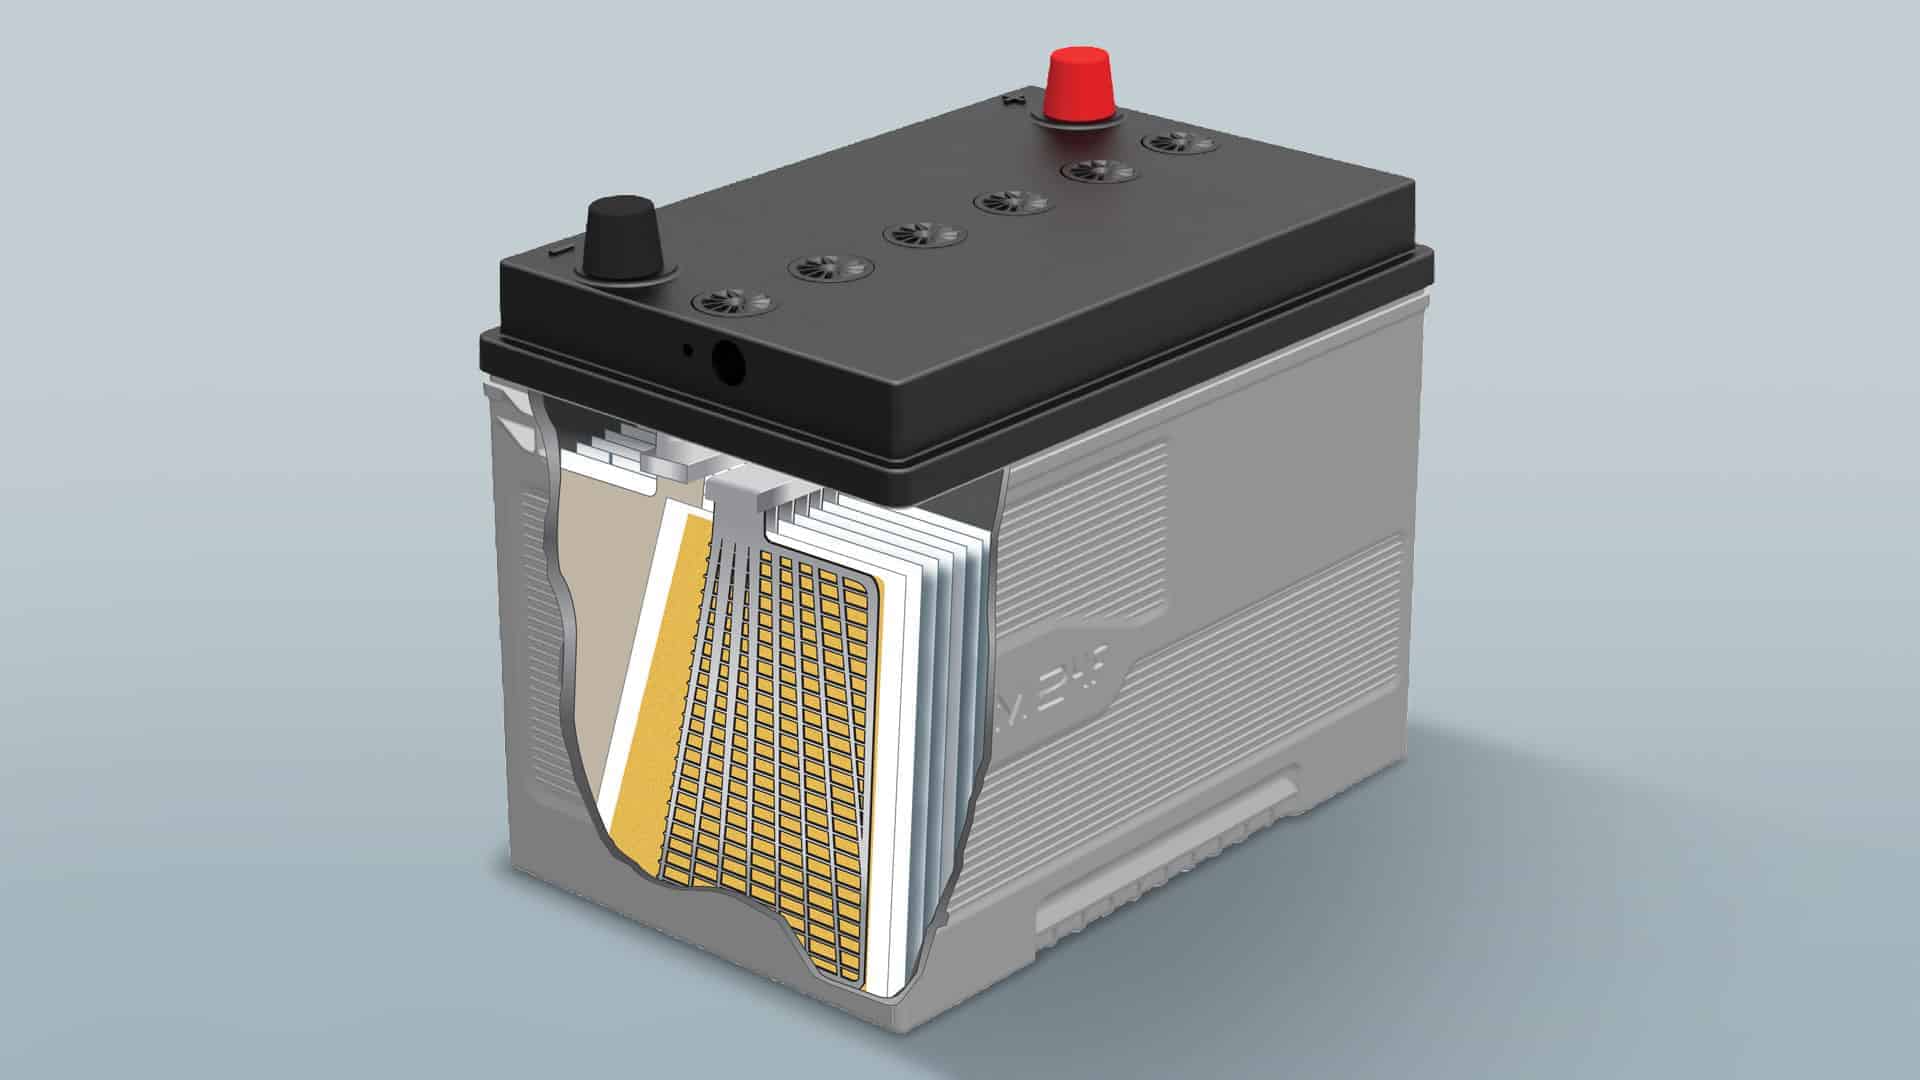 Akumulator z elektrolitem ciekłym czy żelowym